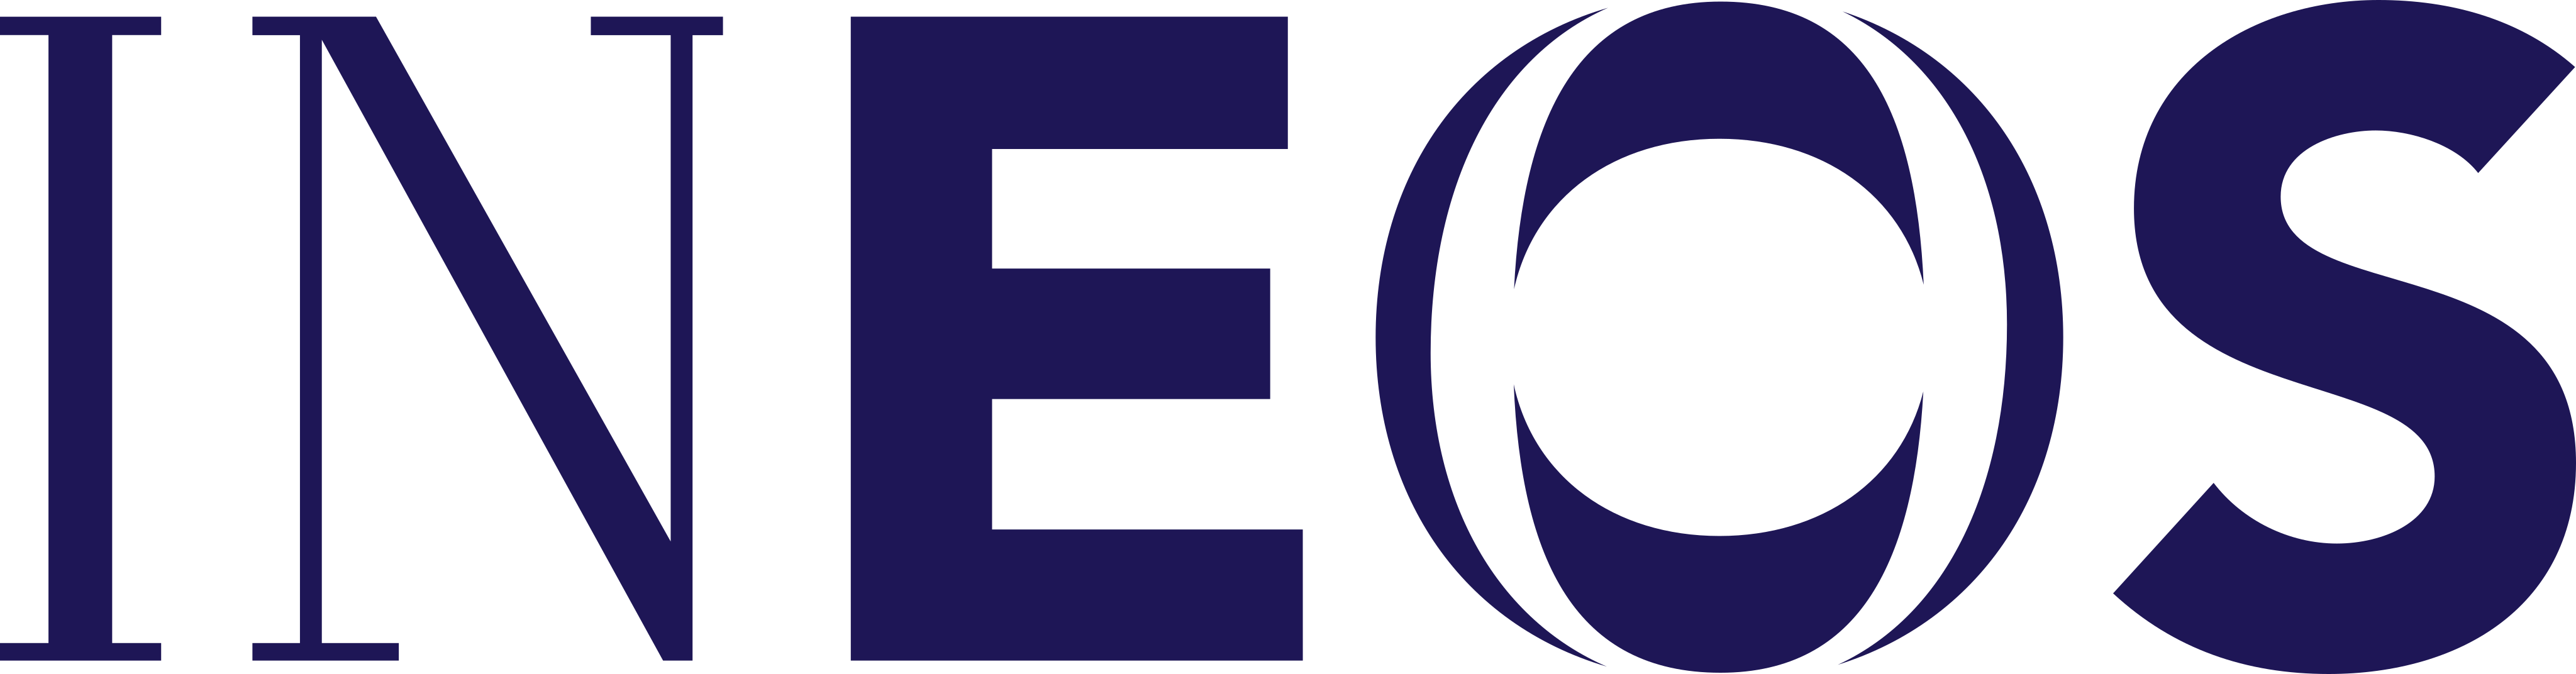 ineos logo - INEOS Logo